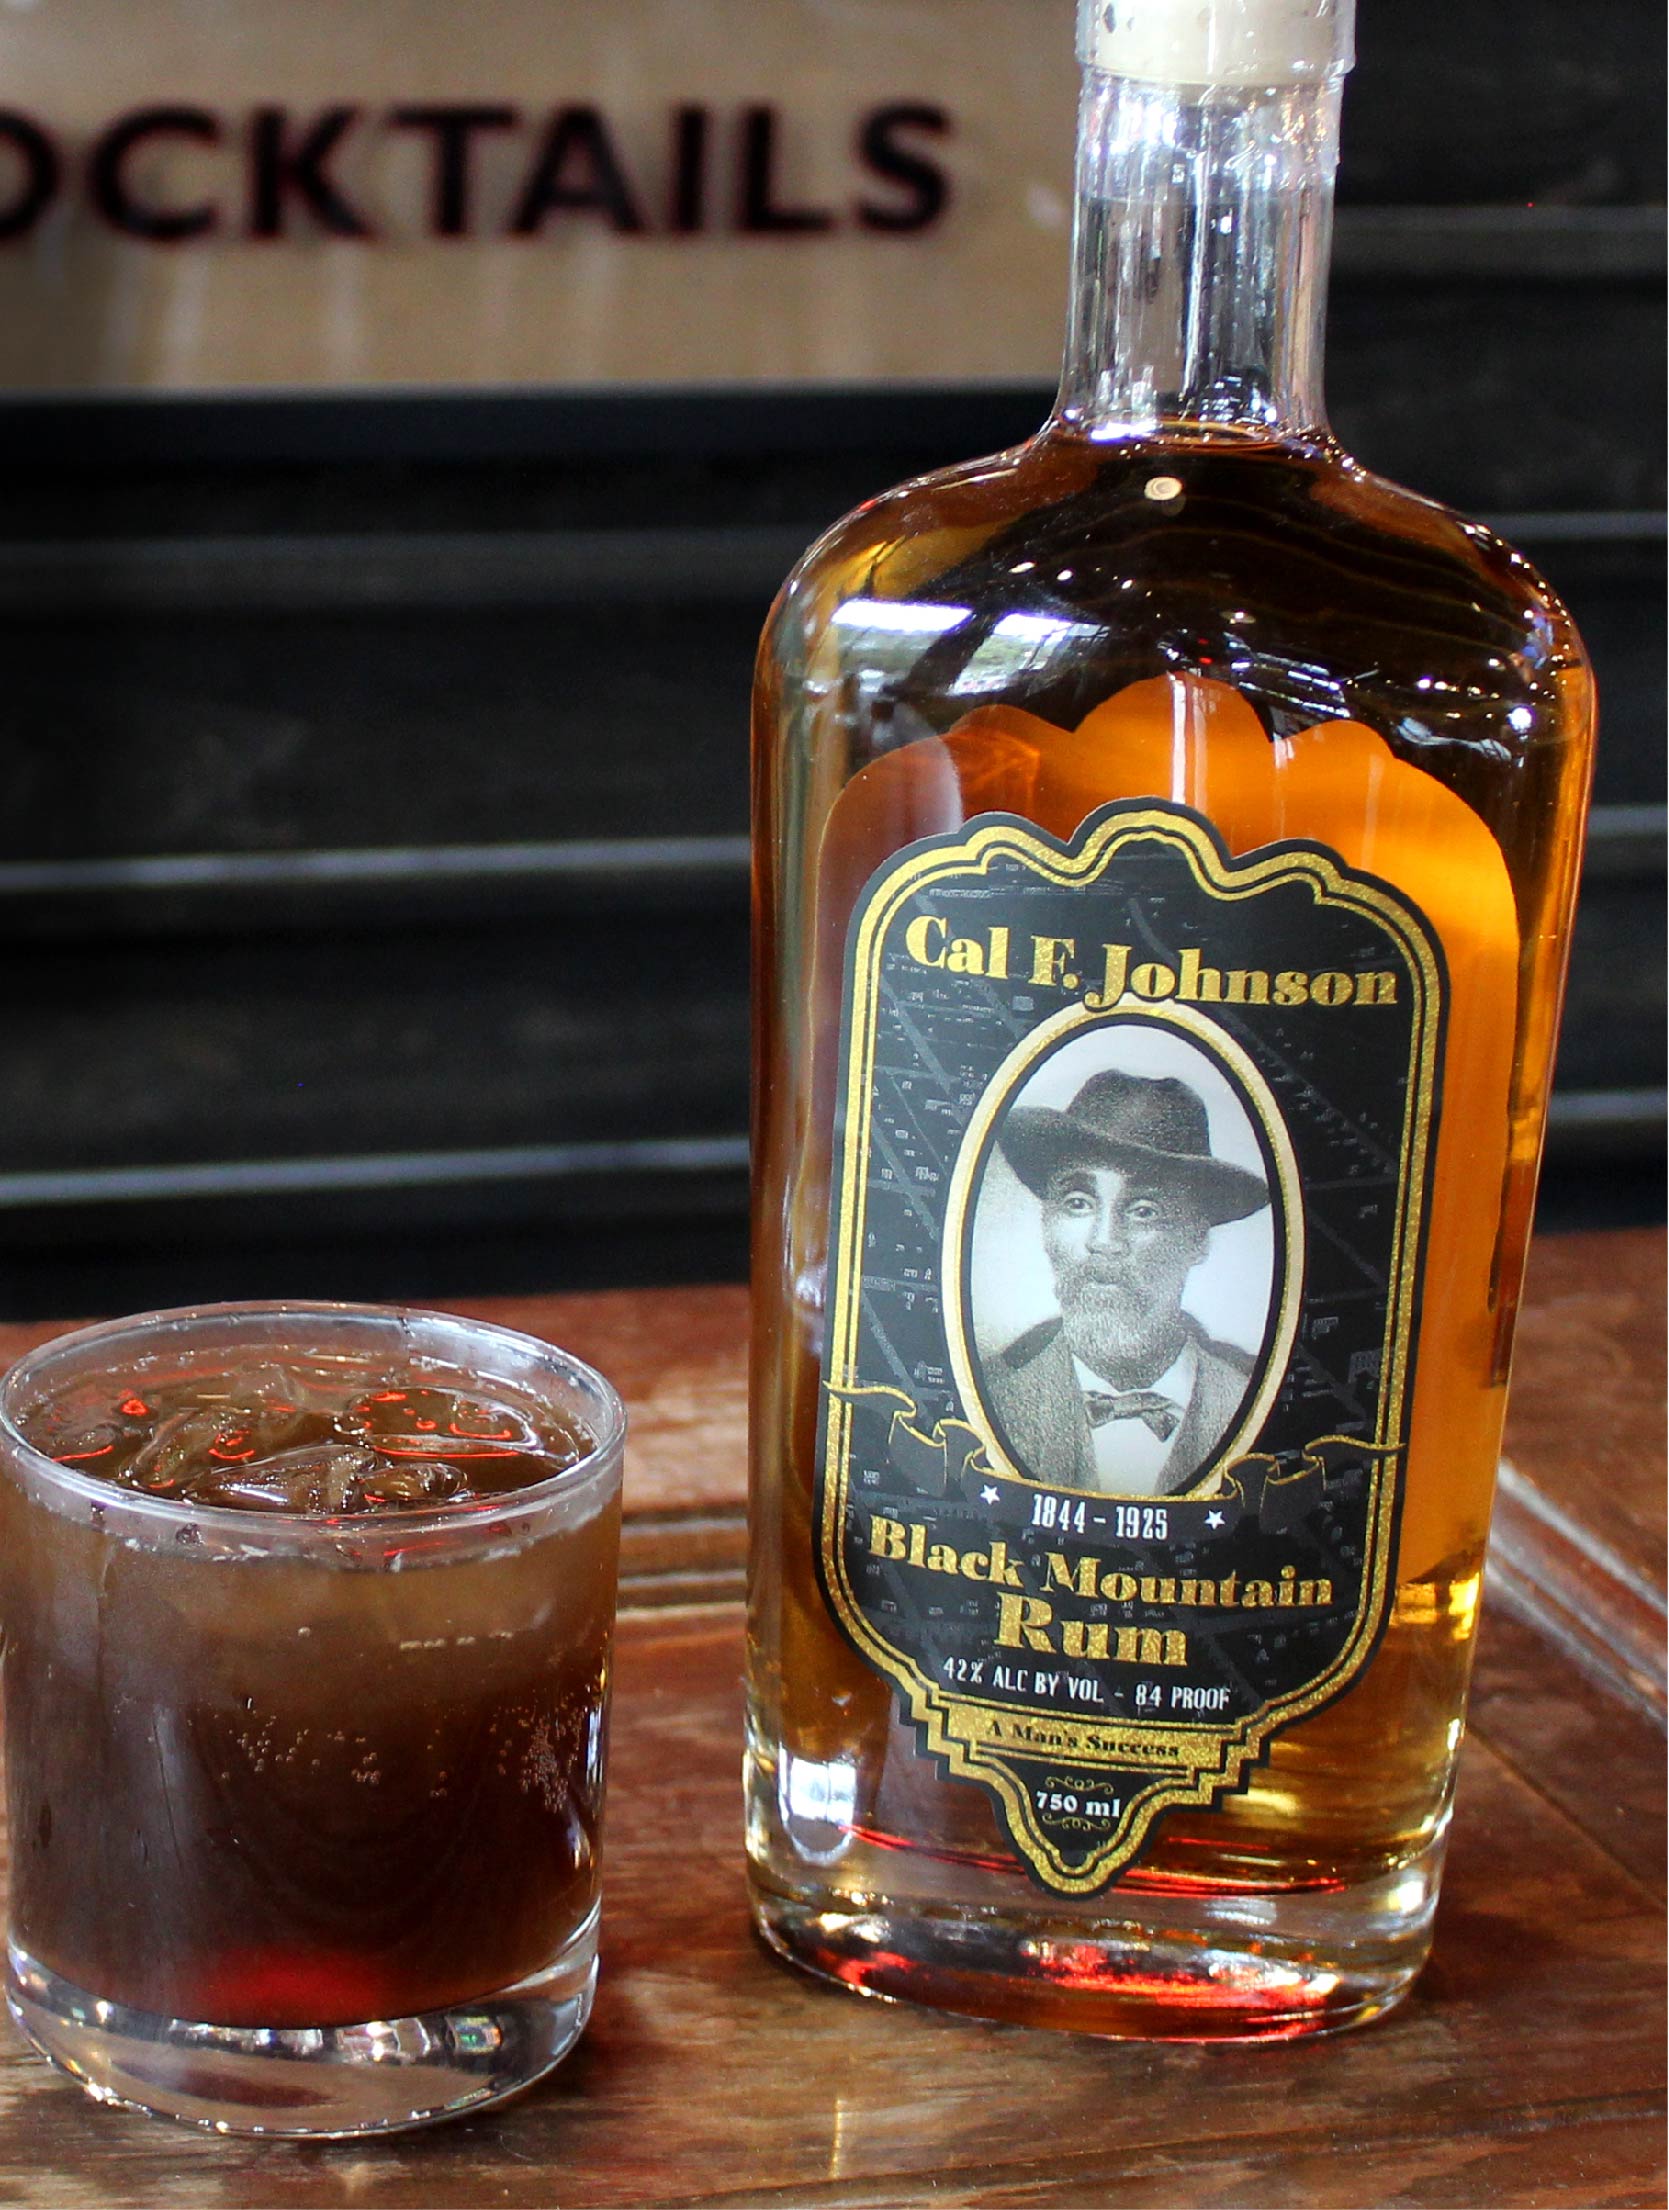 Cuba libre with Black Mountain Rum.